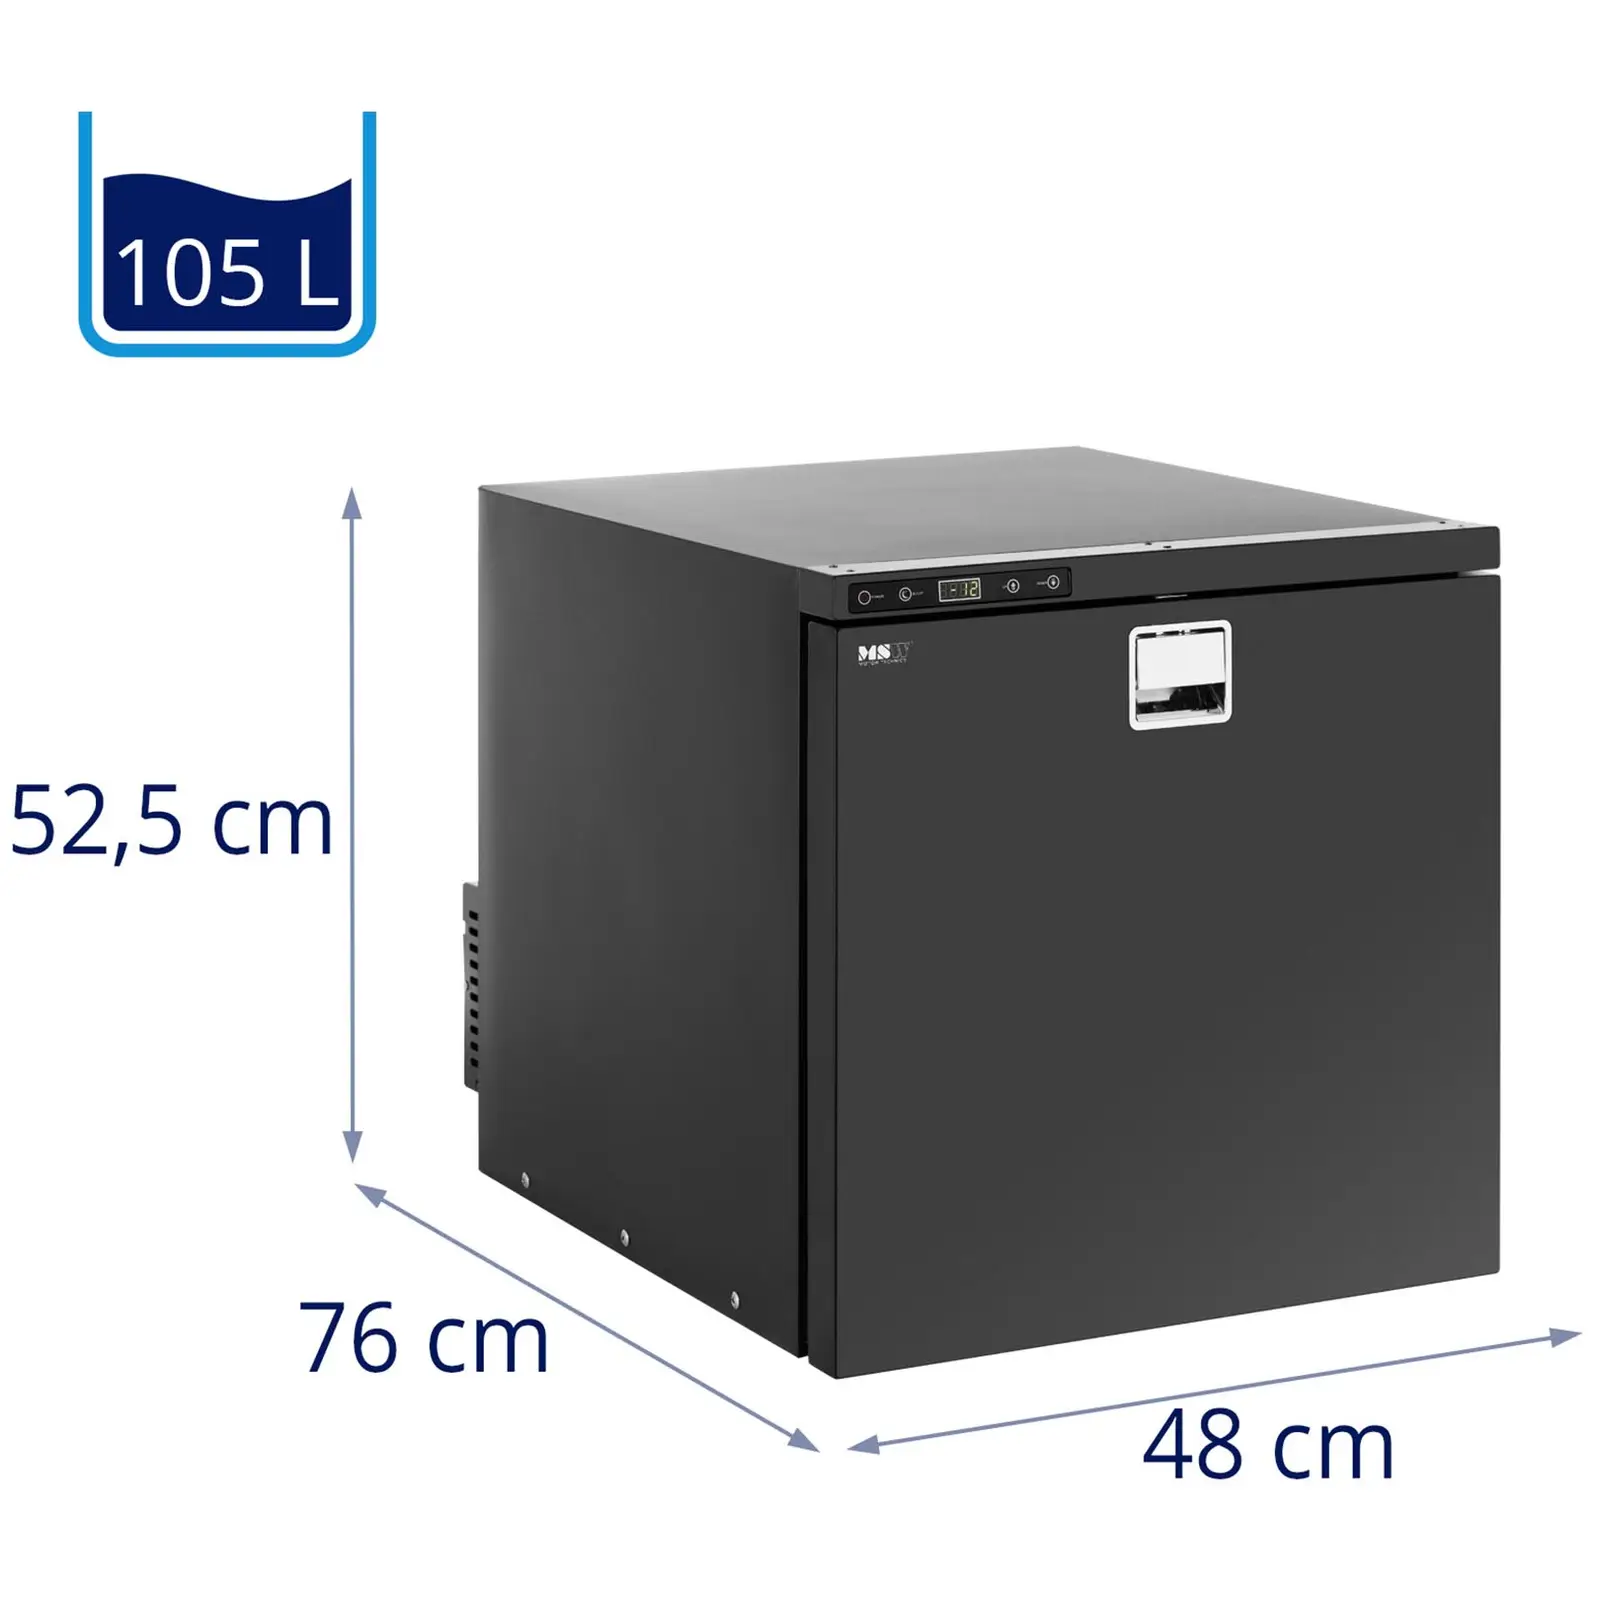 Refrigerador para automóvil - 105 L - -12 - 10 °C - 12/24 V - acero